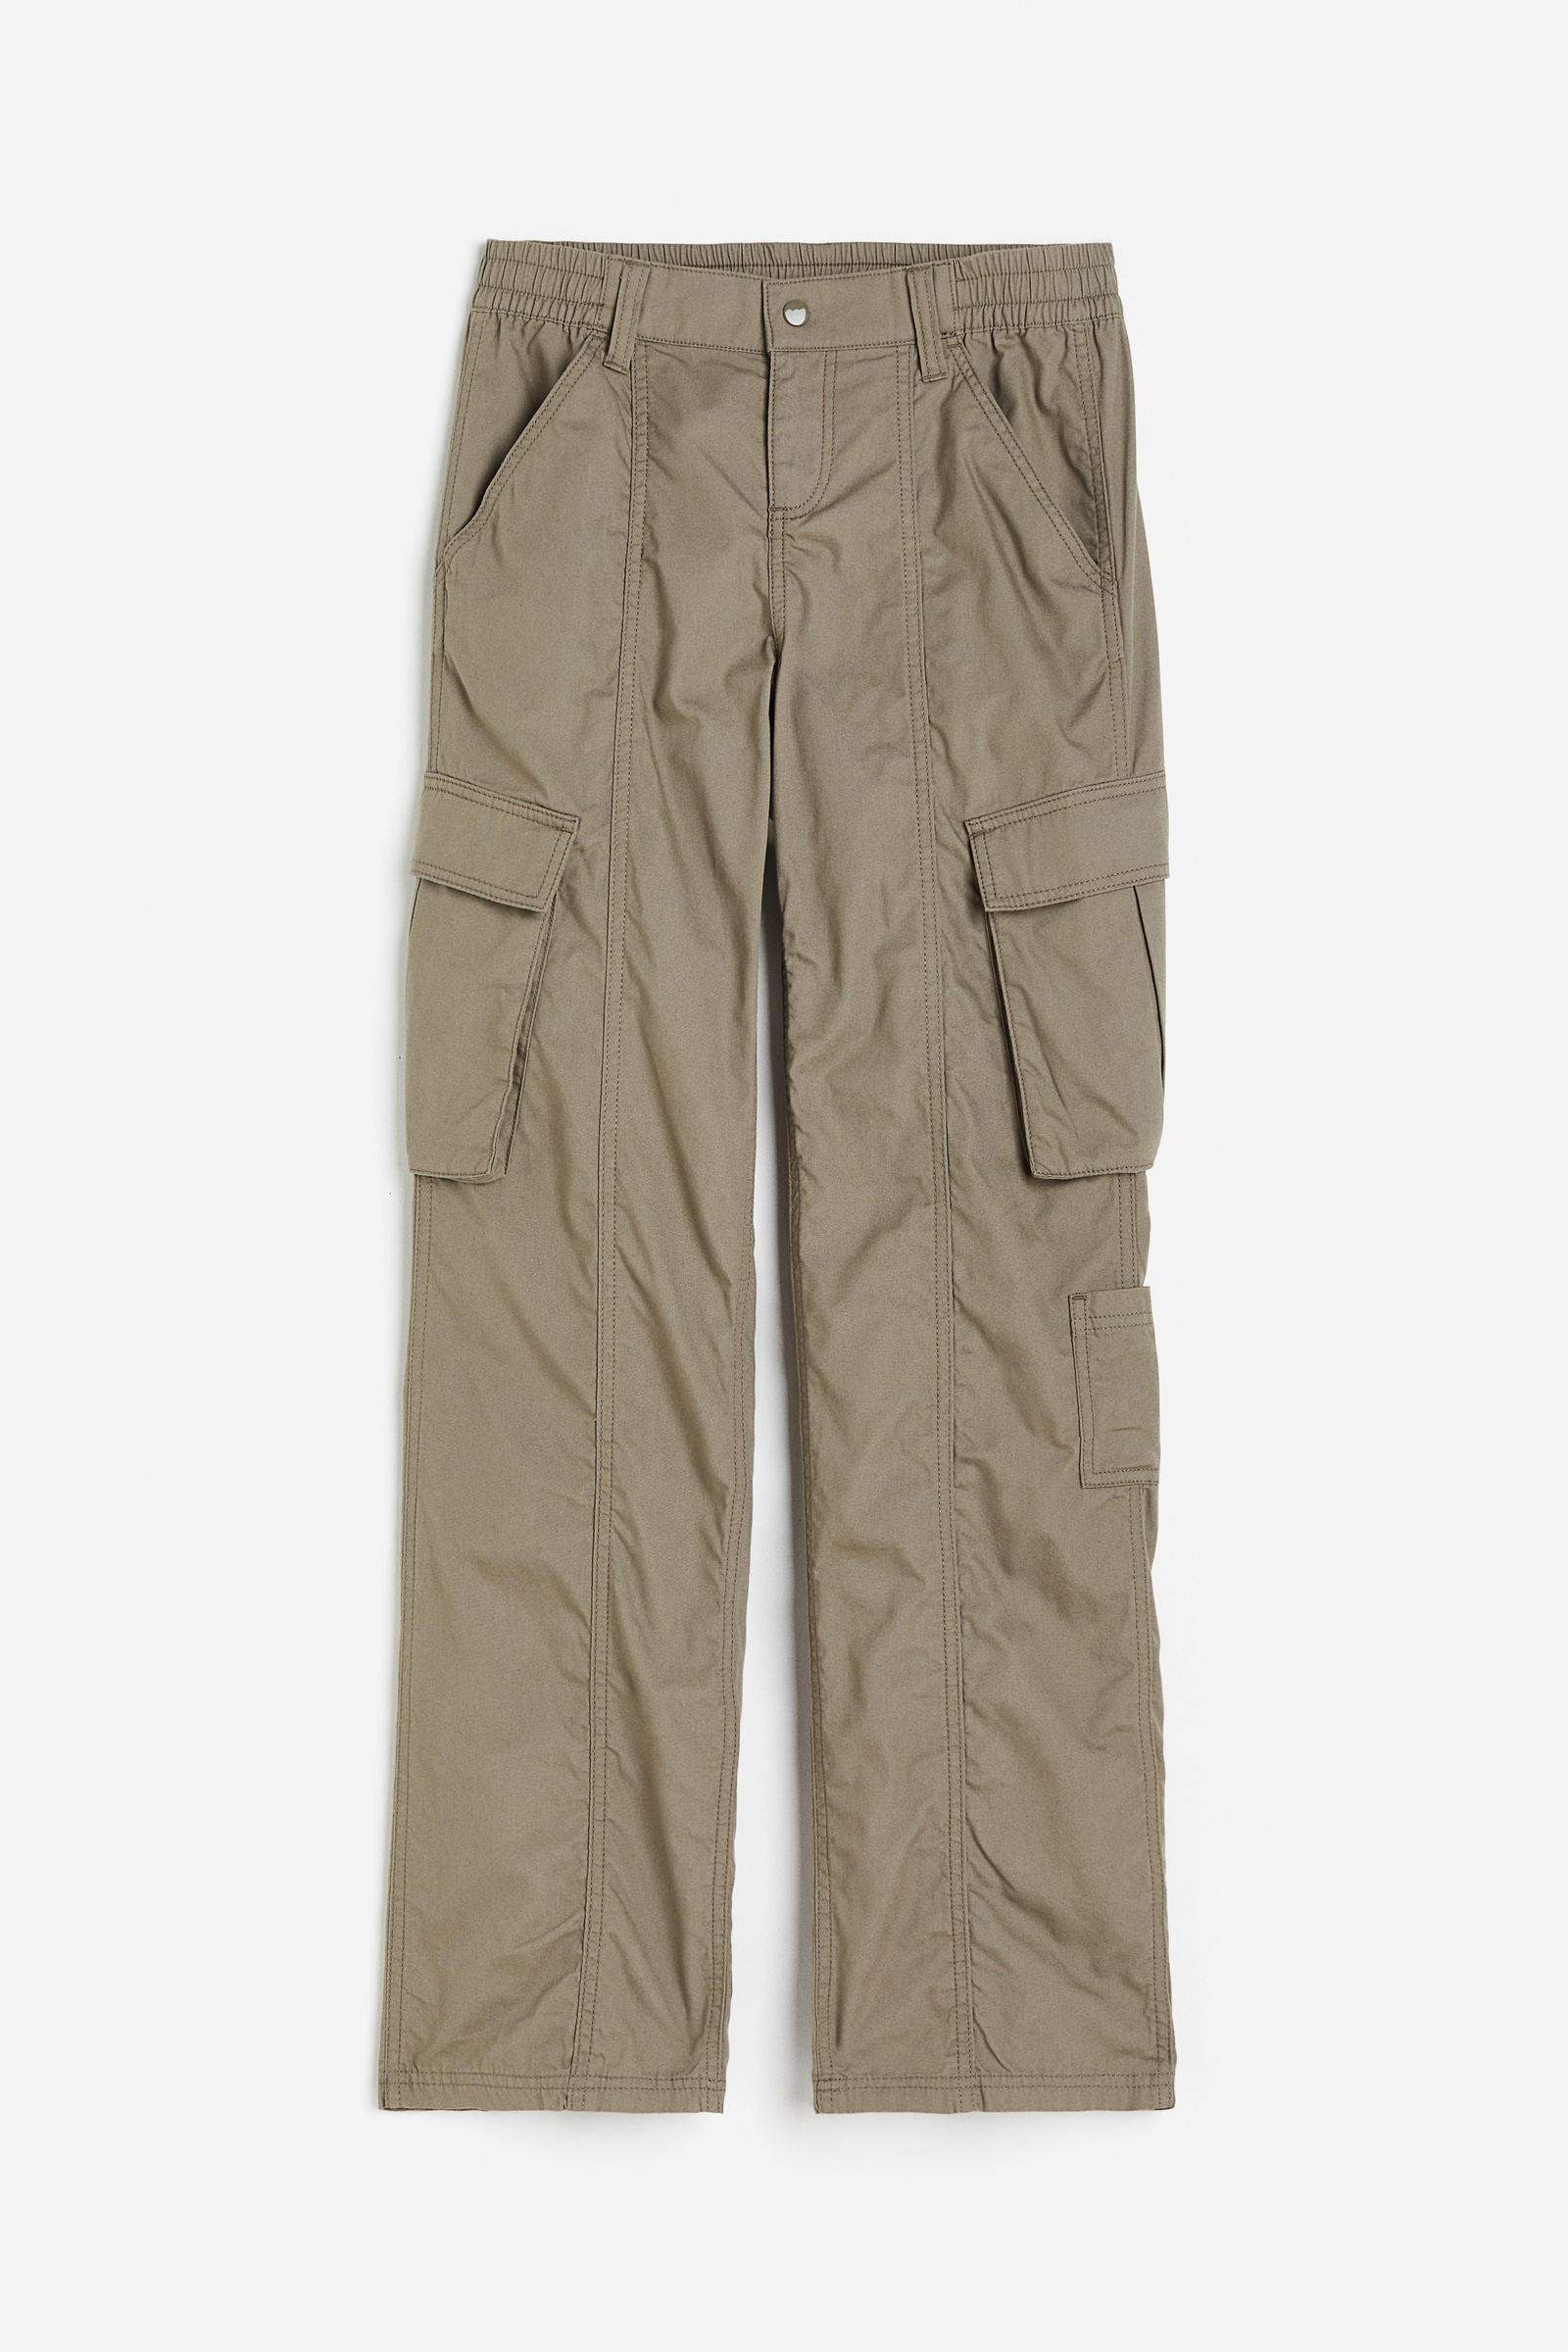 Pantalones para mujer paracaídas, clásicos y anchos - H&M CO